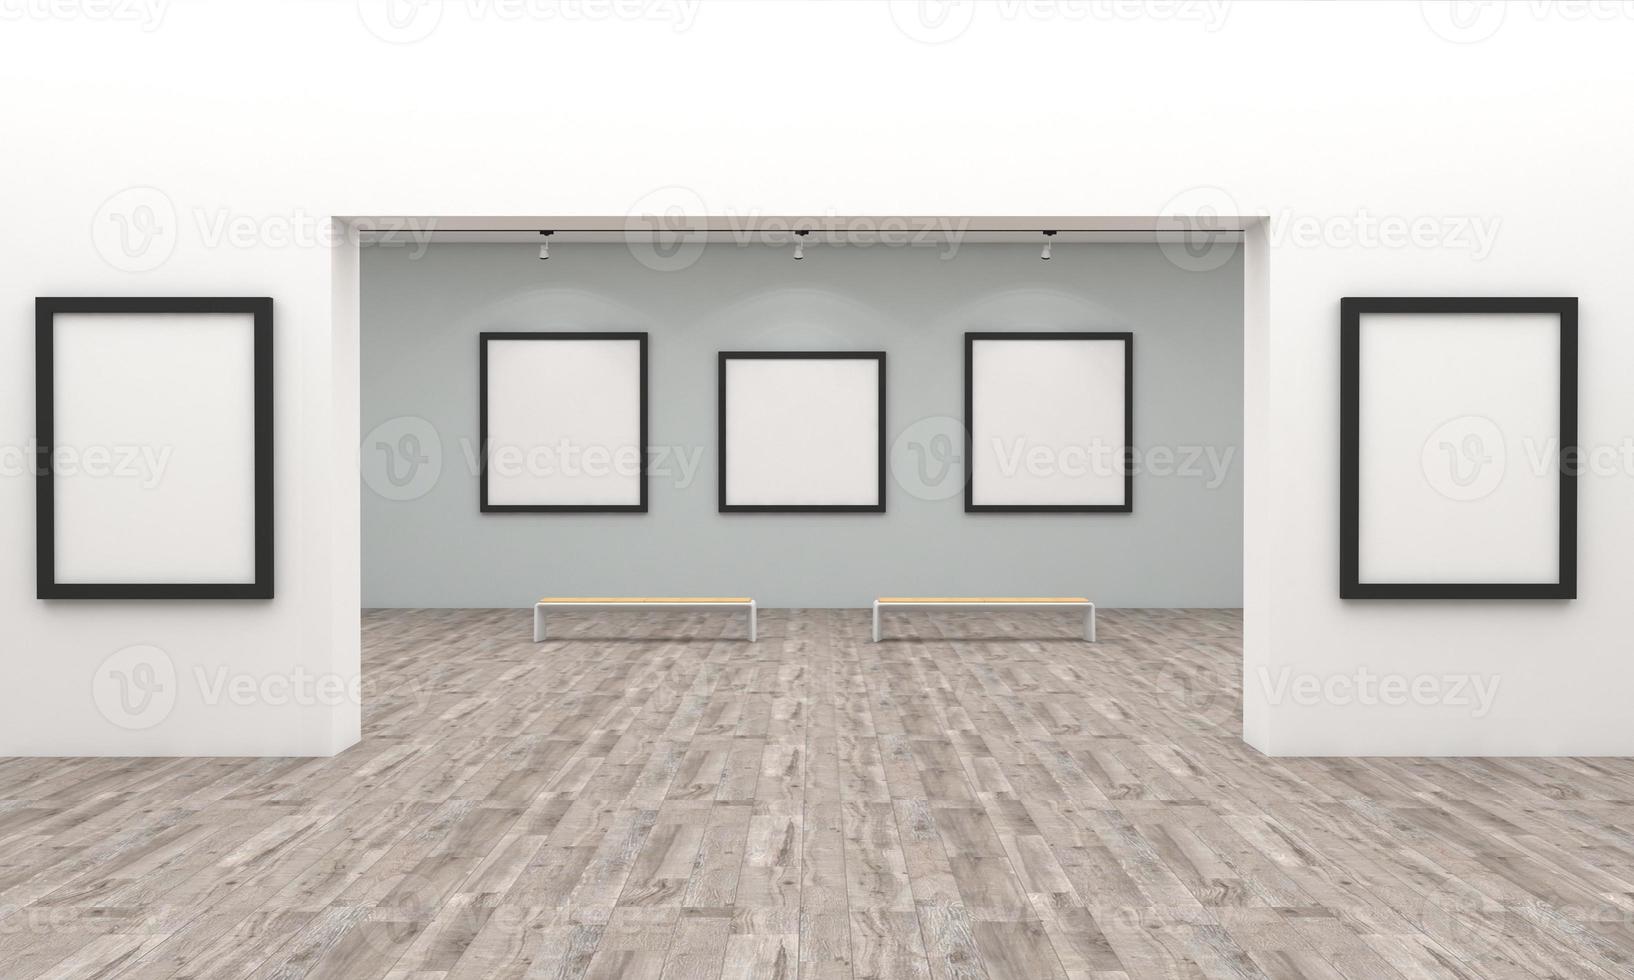 maqueta de marcos de galería de arte ilustración 3d y renderizado 3d foto